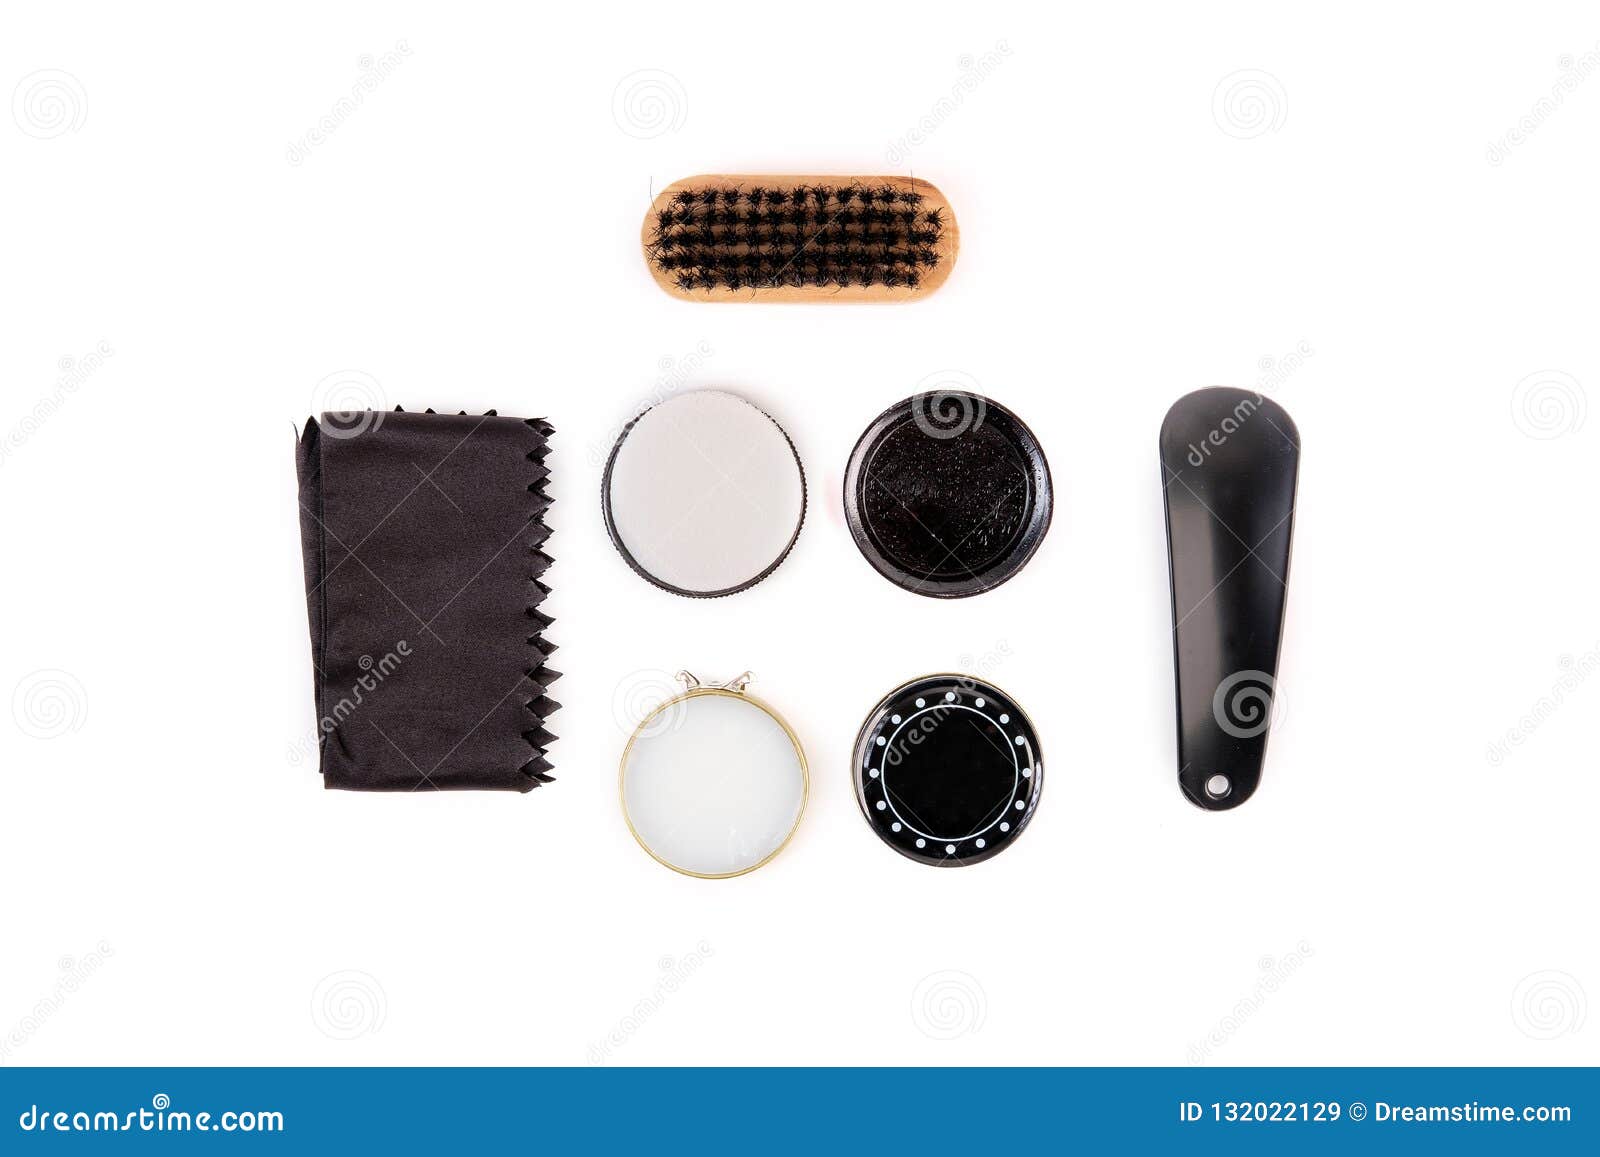 shoe polish brush set